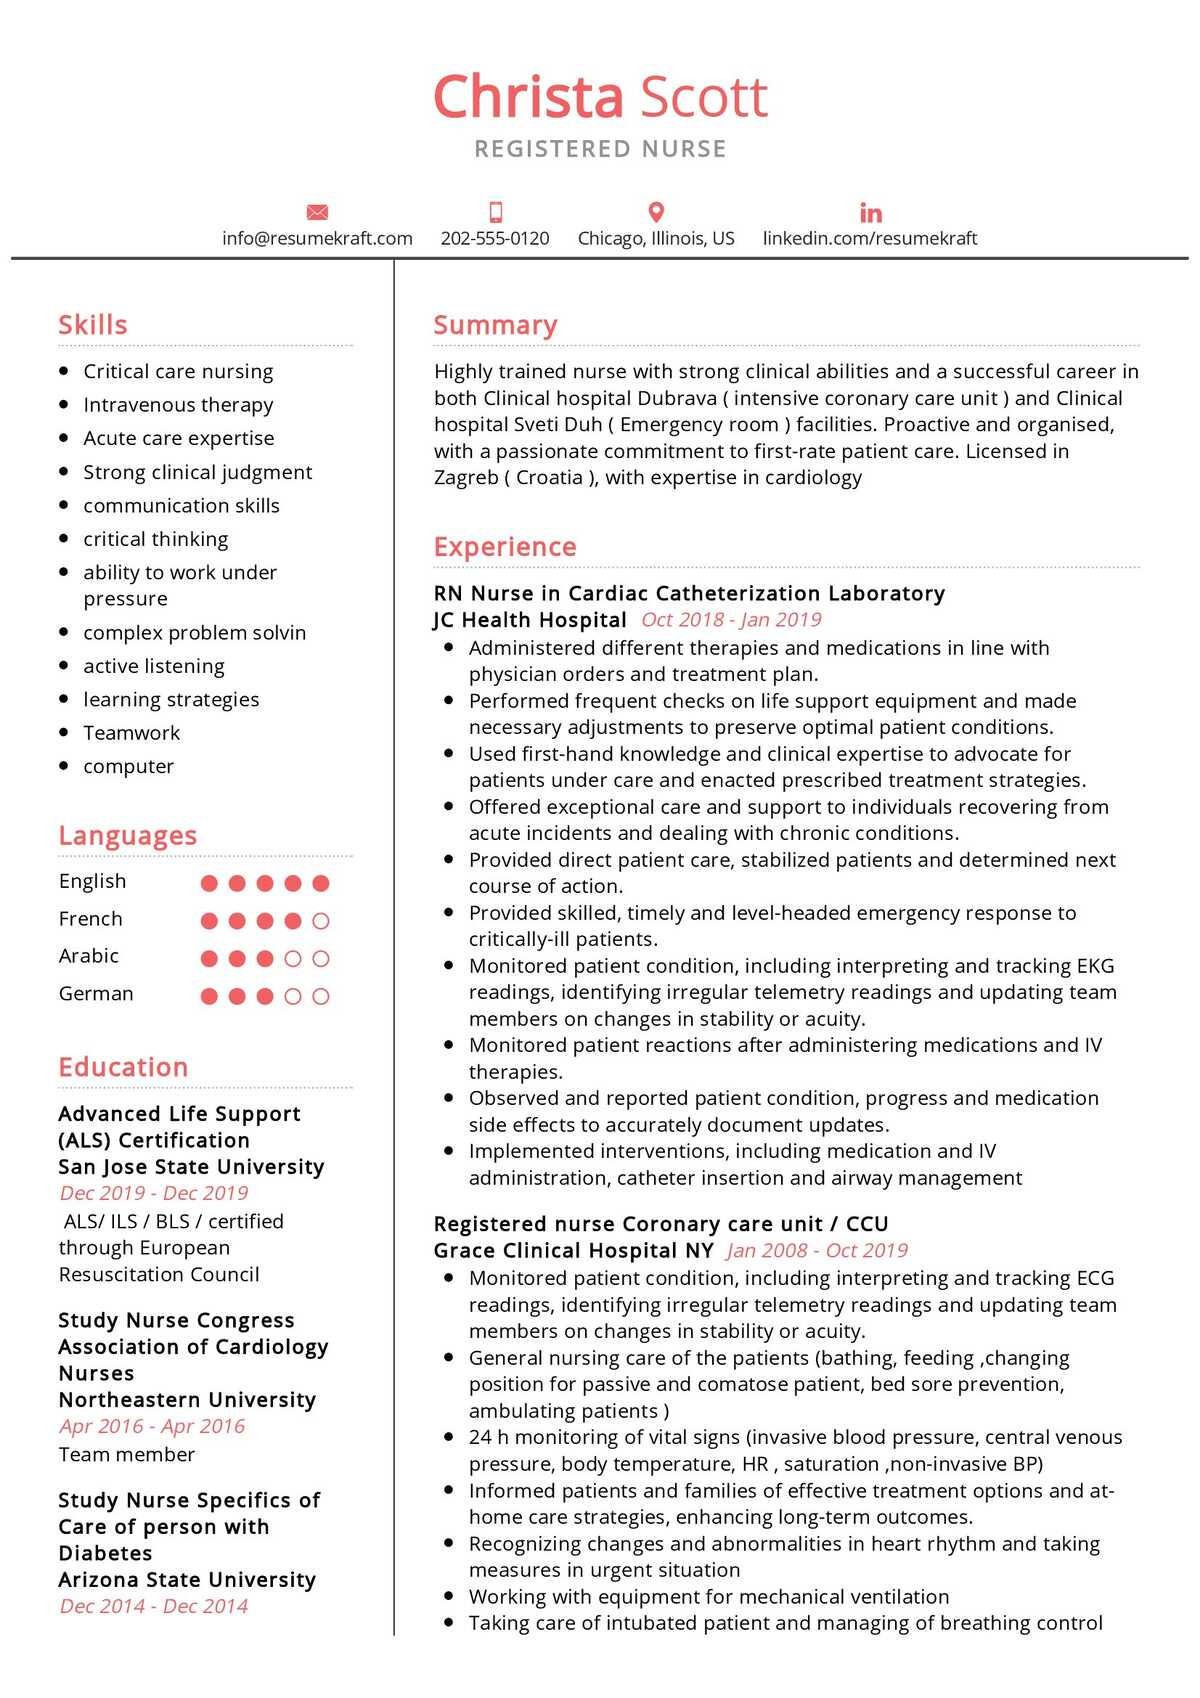 Sample Of A Medical Registered Nurse Resume Registered Nurse Resume Example 2021 Writing Guide – Resumekraft